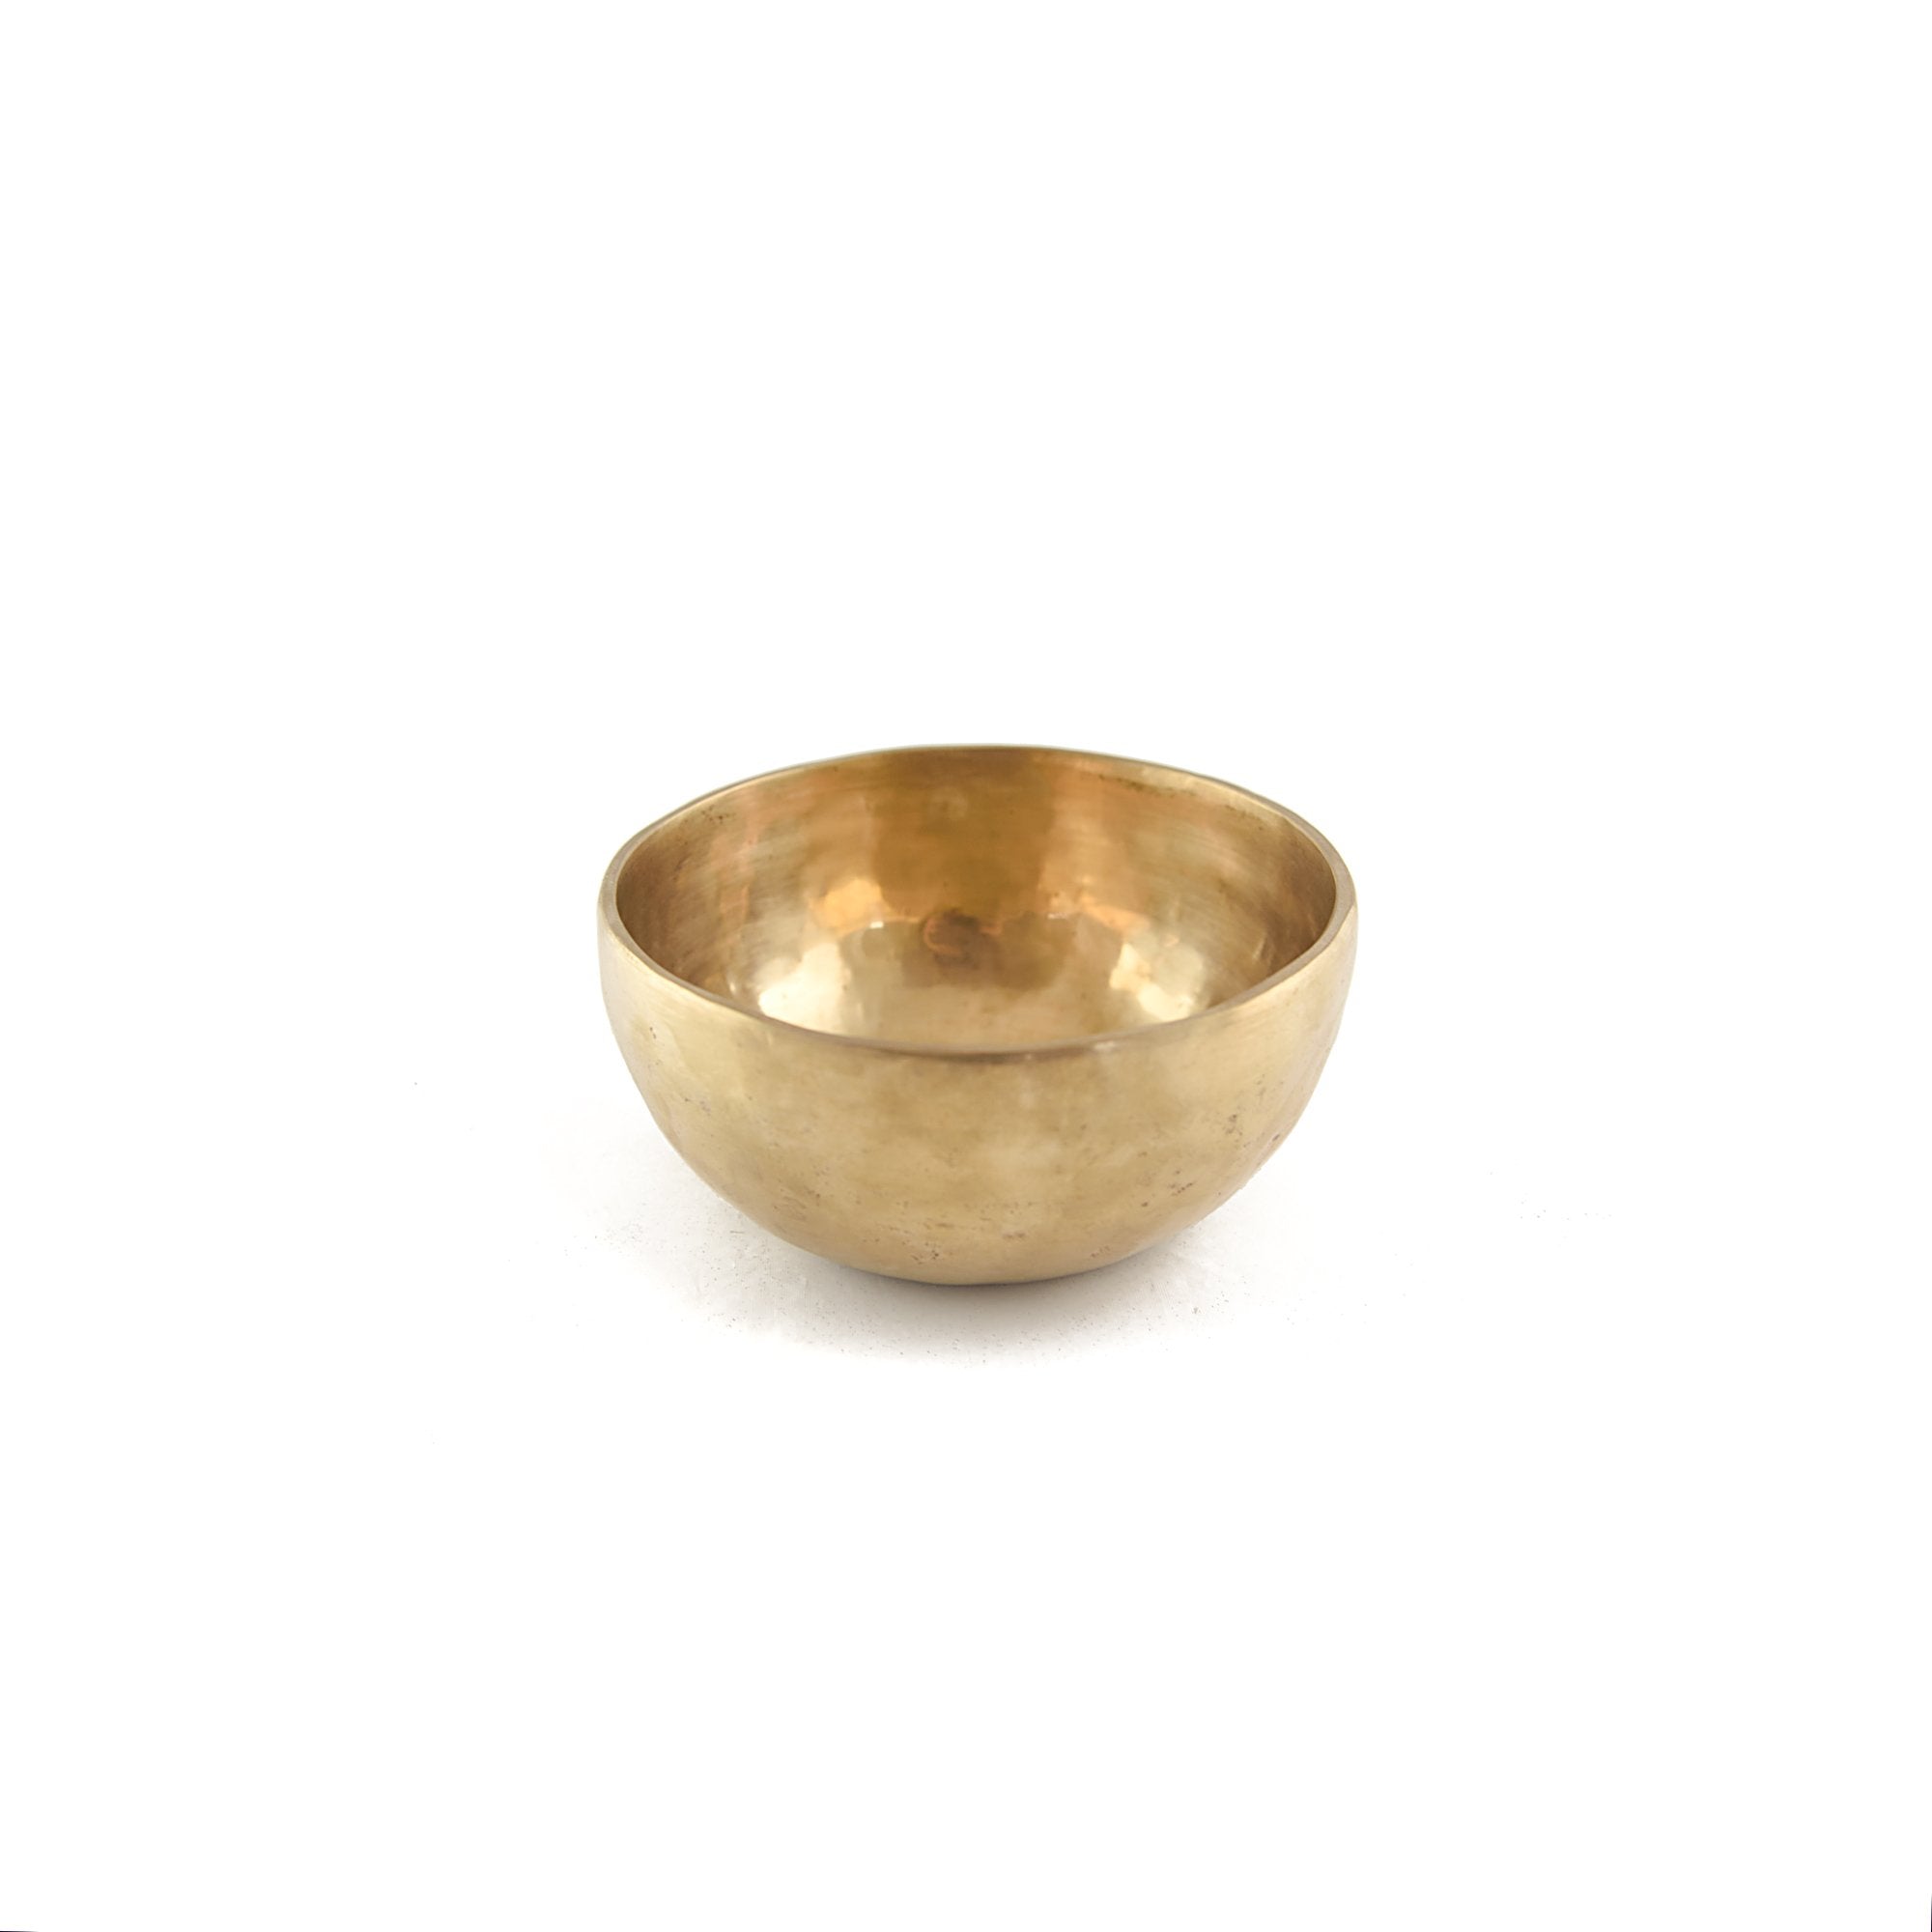 Tibetan Singing Bowl (Medium/Large) 1100-1299 gm